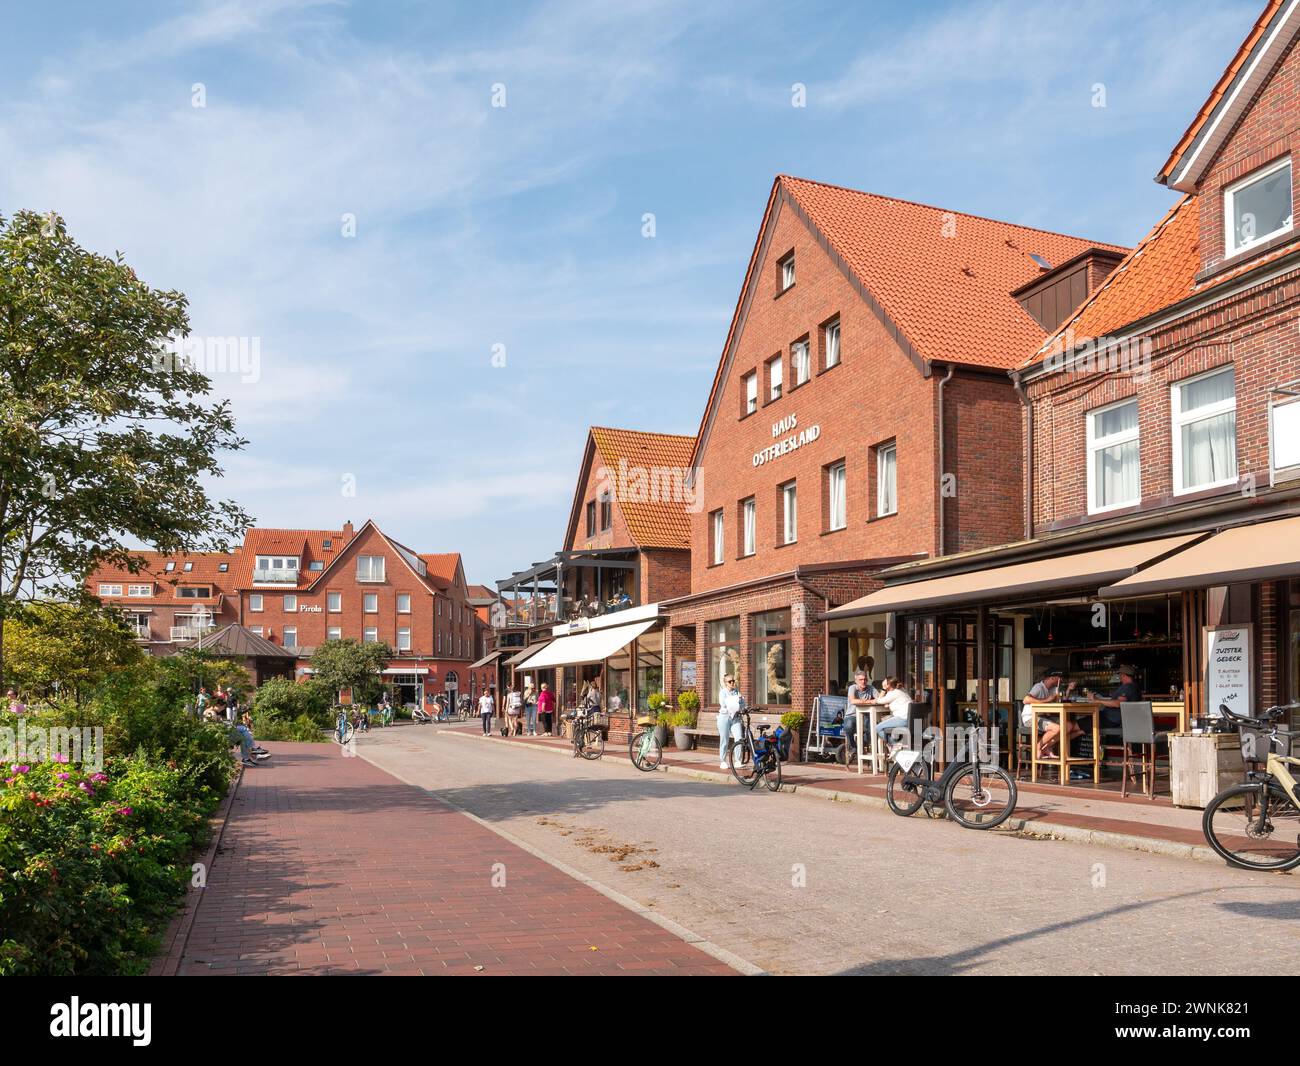 Scena di strada con biciclette e persone nella città vecchia dell'isola Juist, bassa Sassonia, Germania Foto Stock